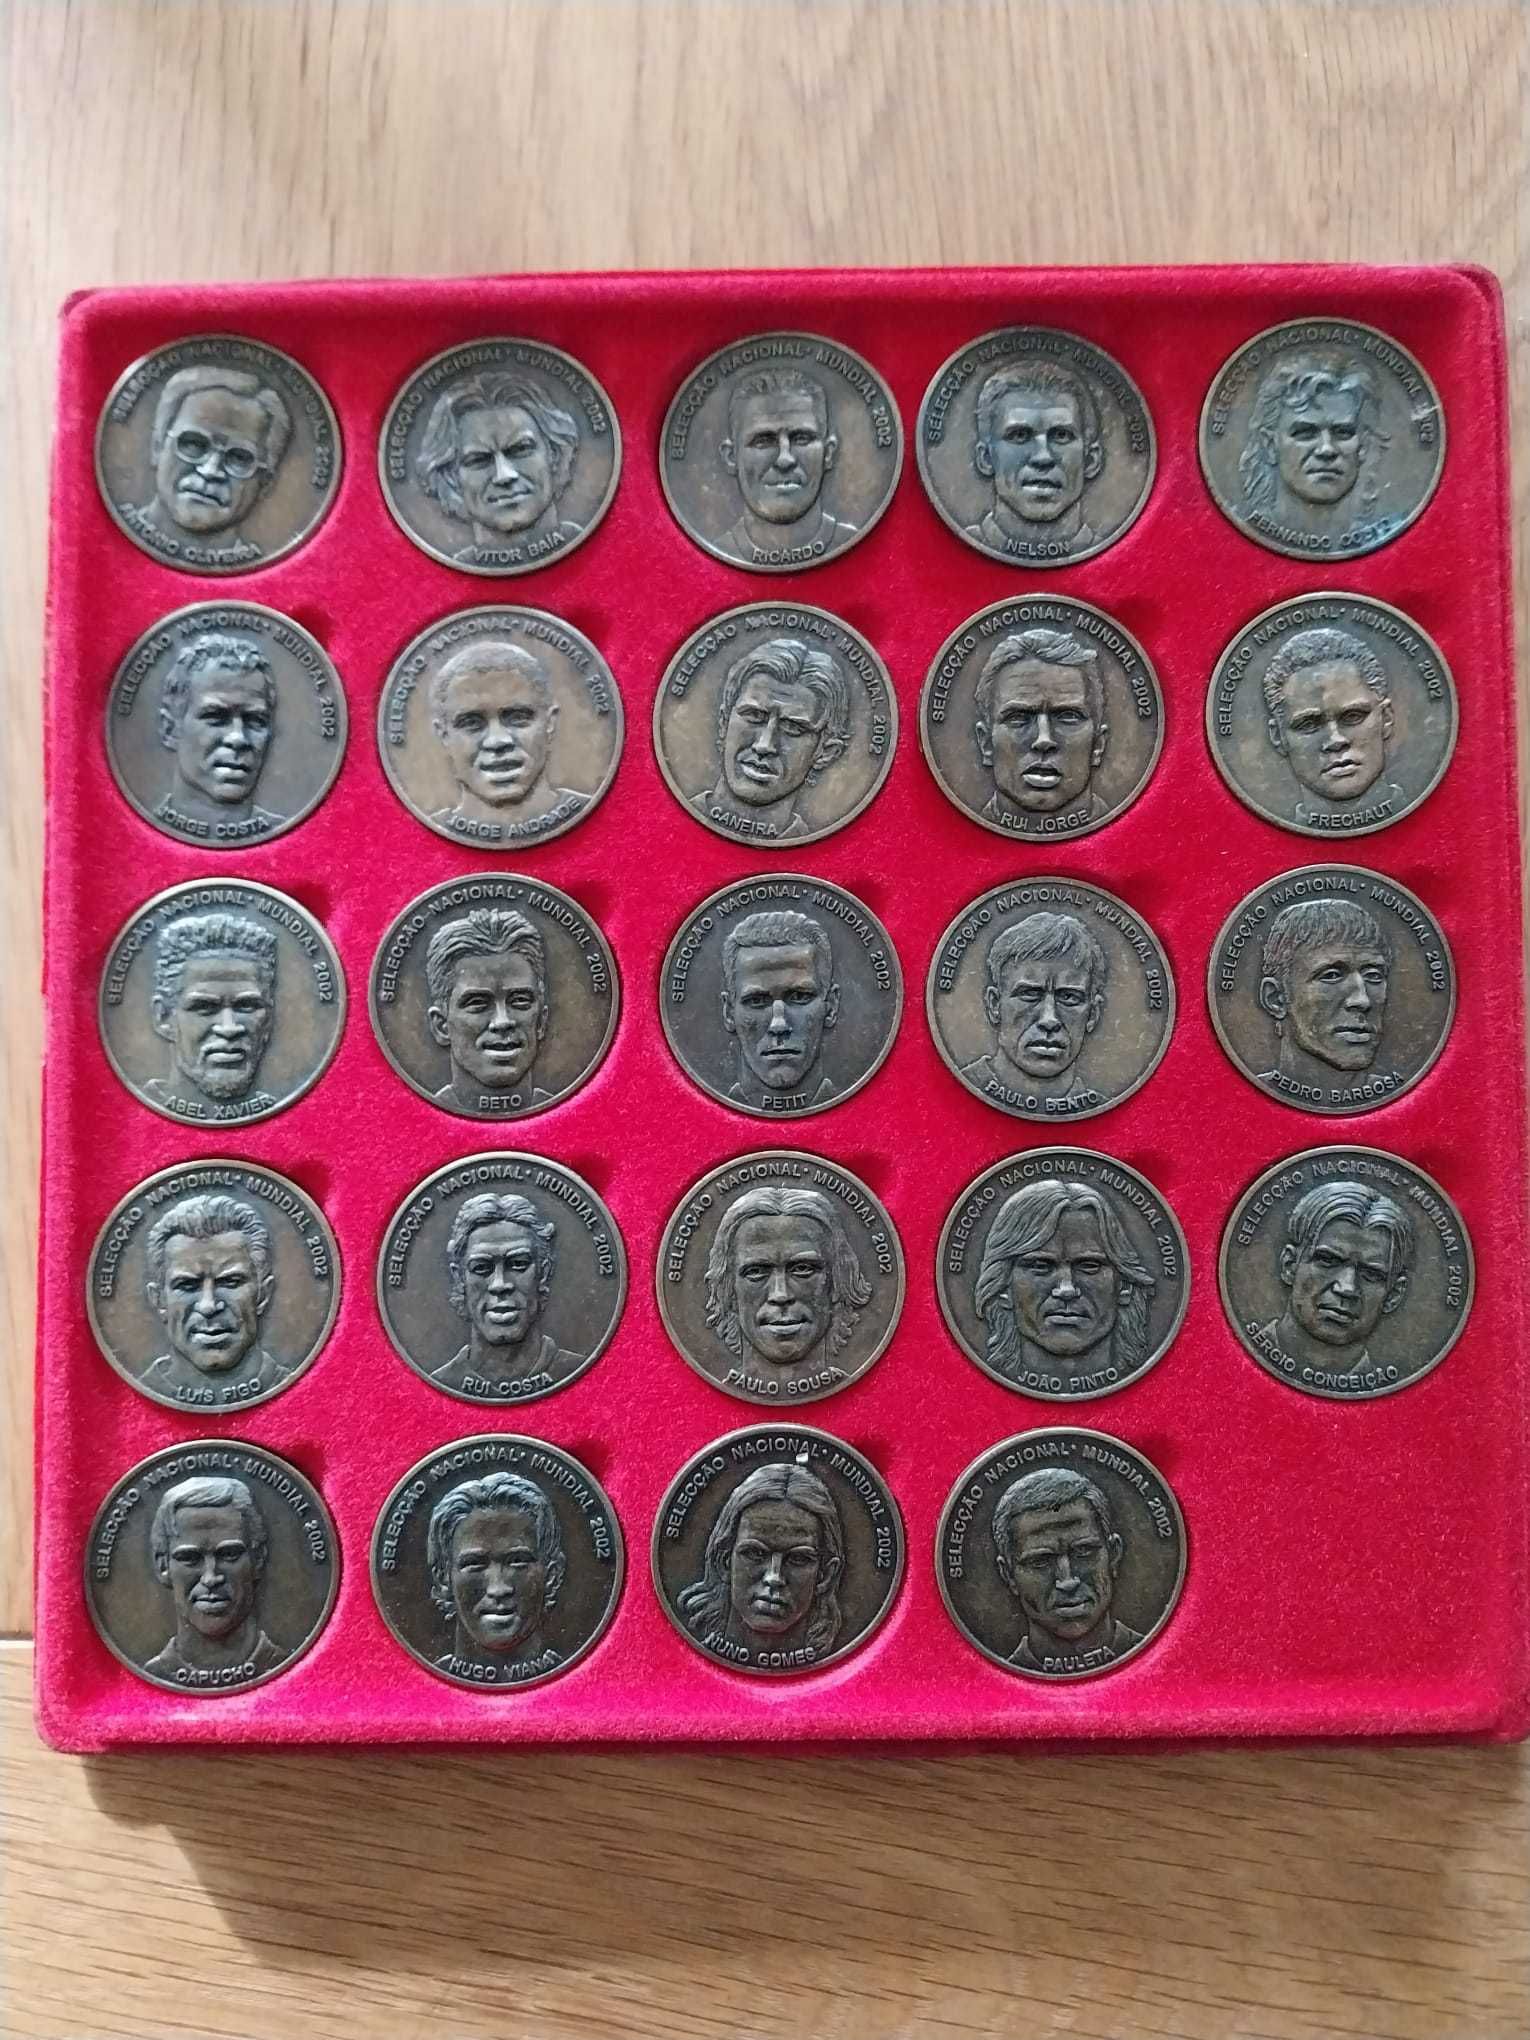 Medalhas da Seleção Nacional de Futebol - Mundial 2002.